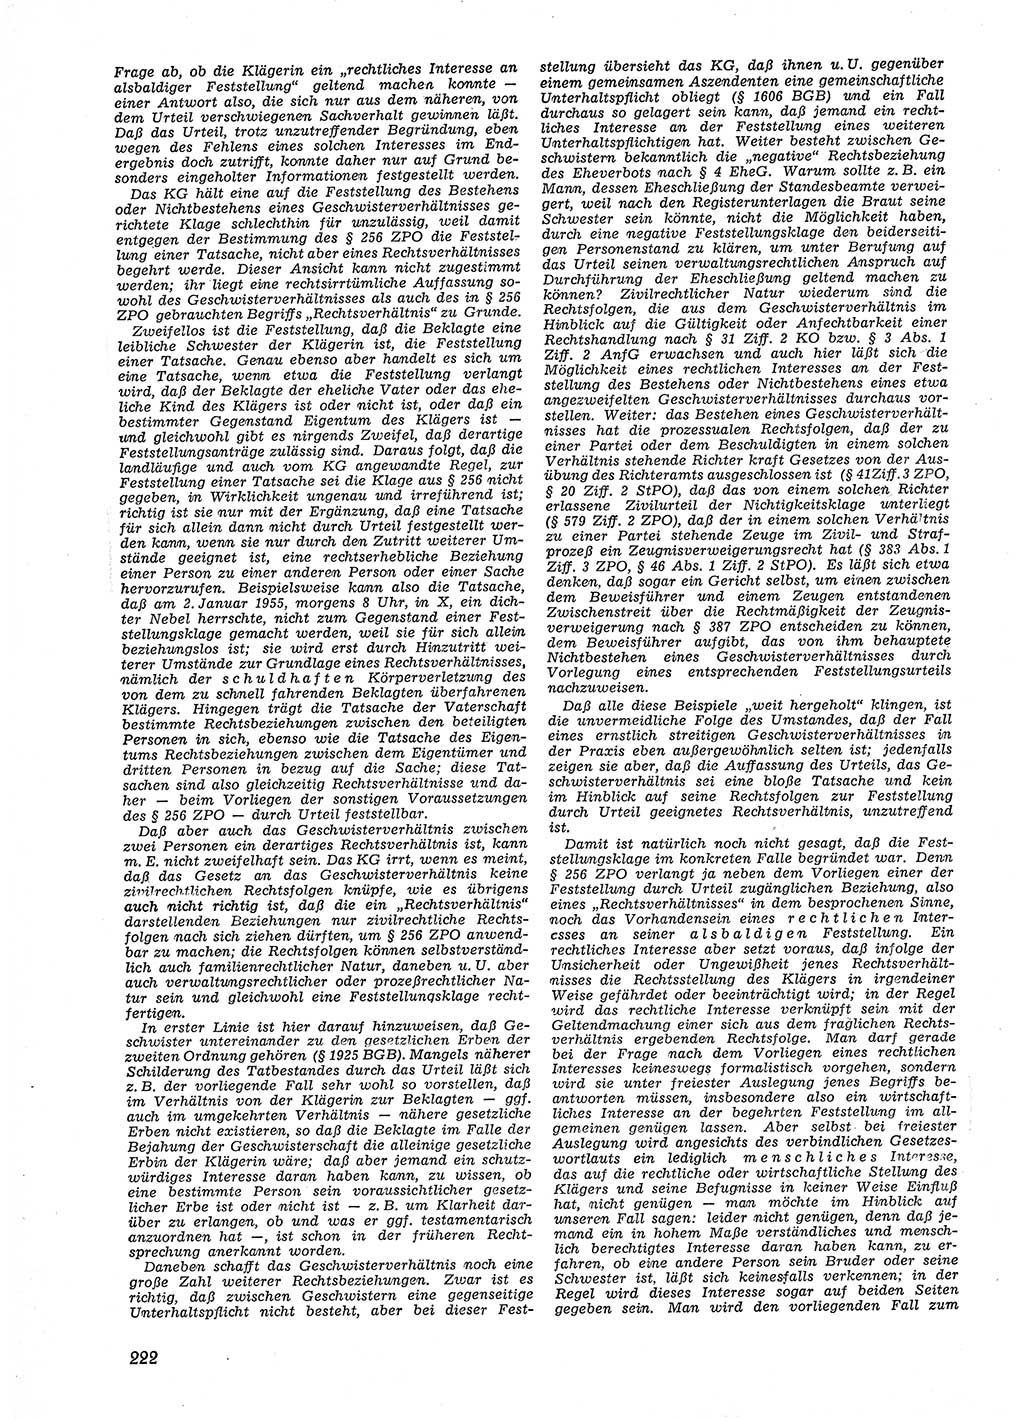 Neue Justiz (NJ), Zeitschrift für Recht und Rechtswissenschaft [Deutsche Demokratische Republik (DDR)], 9. Jahrgang 1955, Seite 222 (NJ DDR 1955, S. 222)